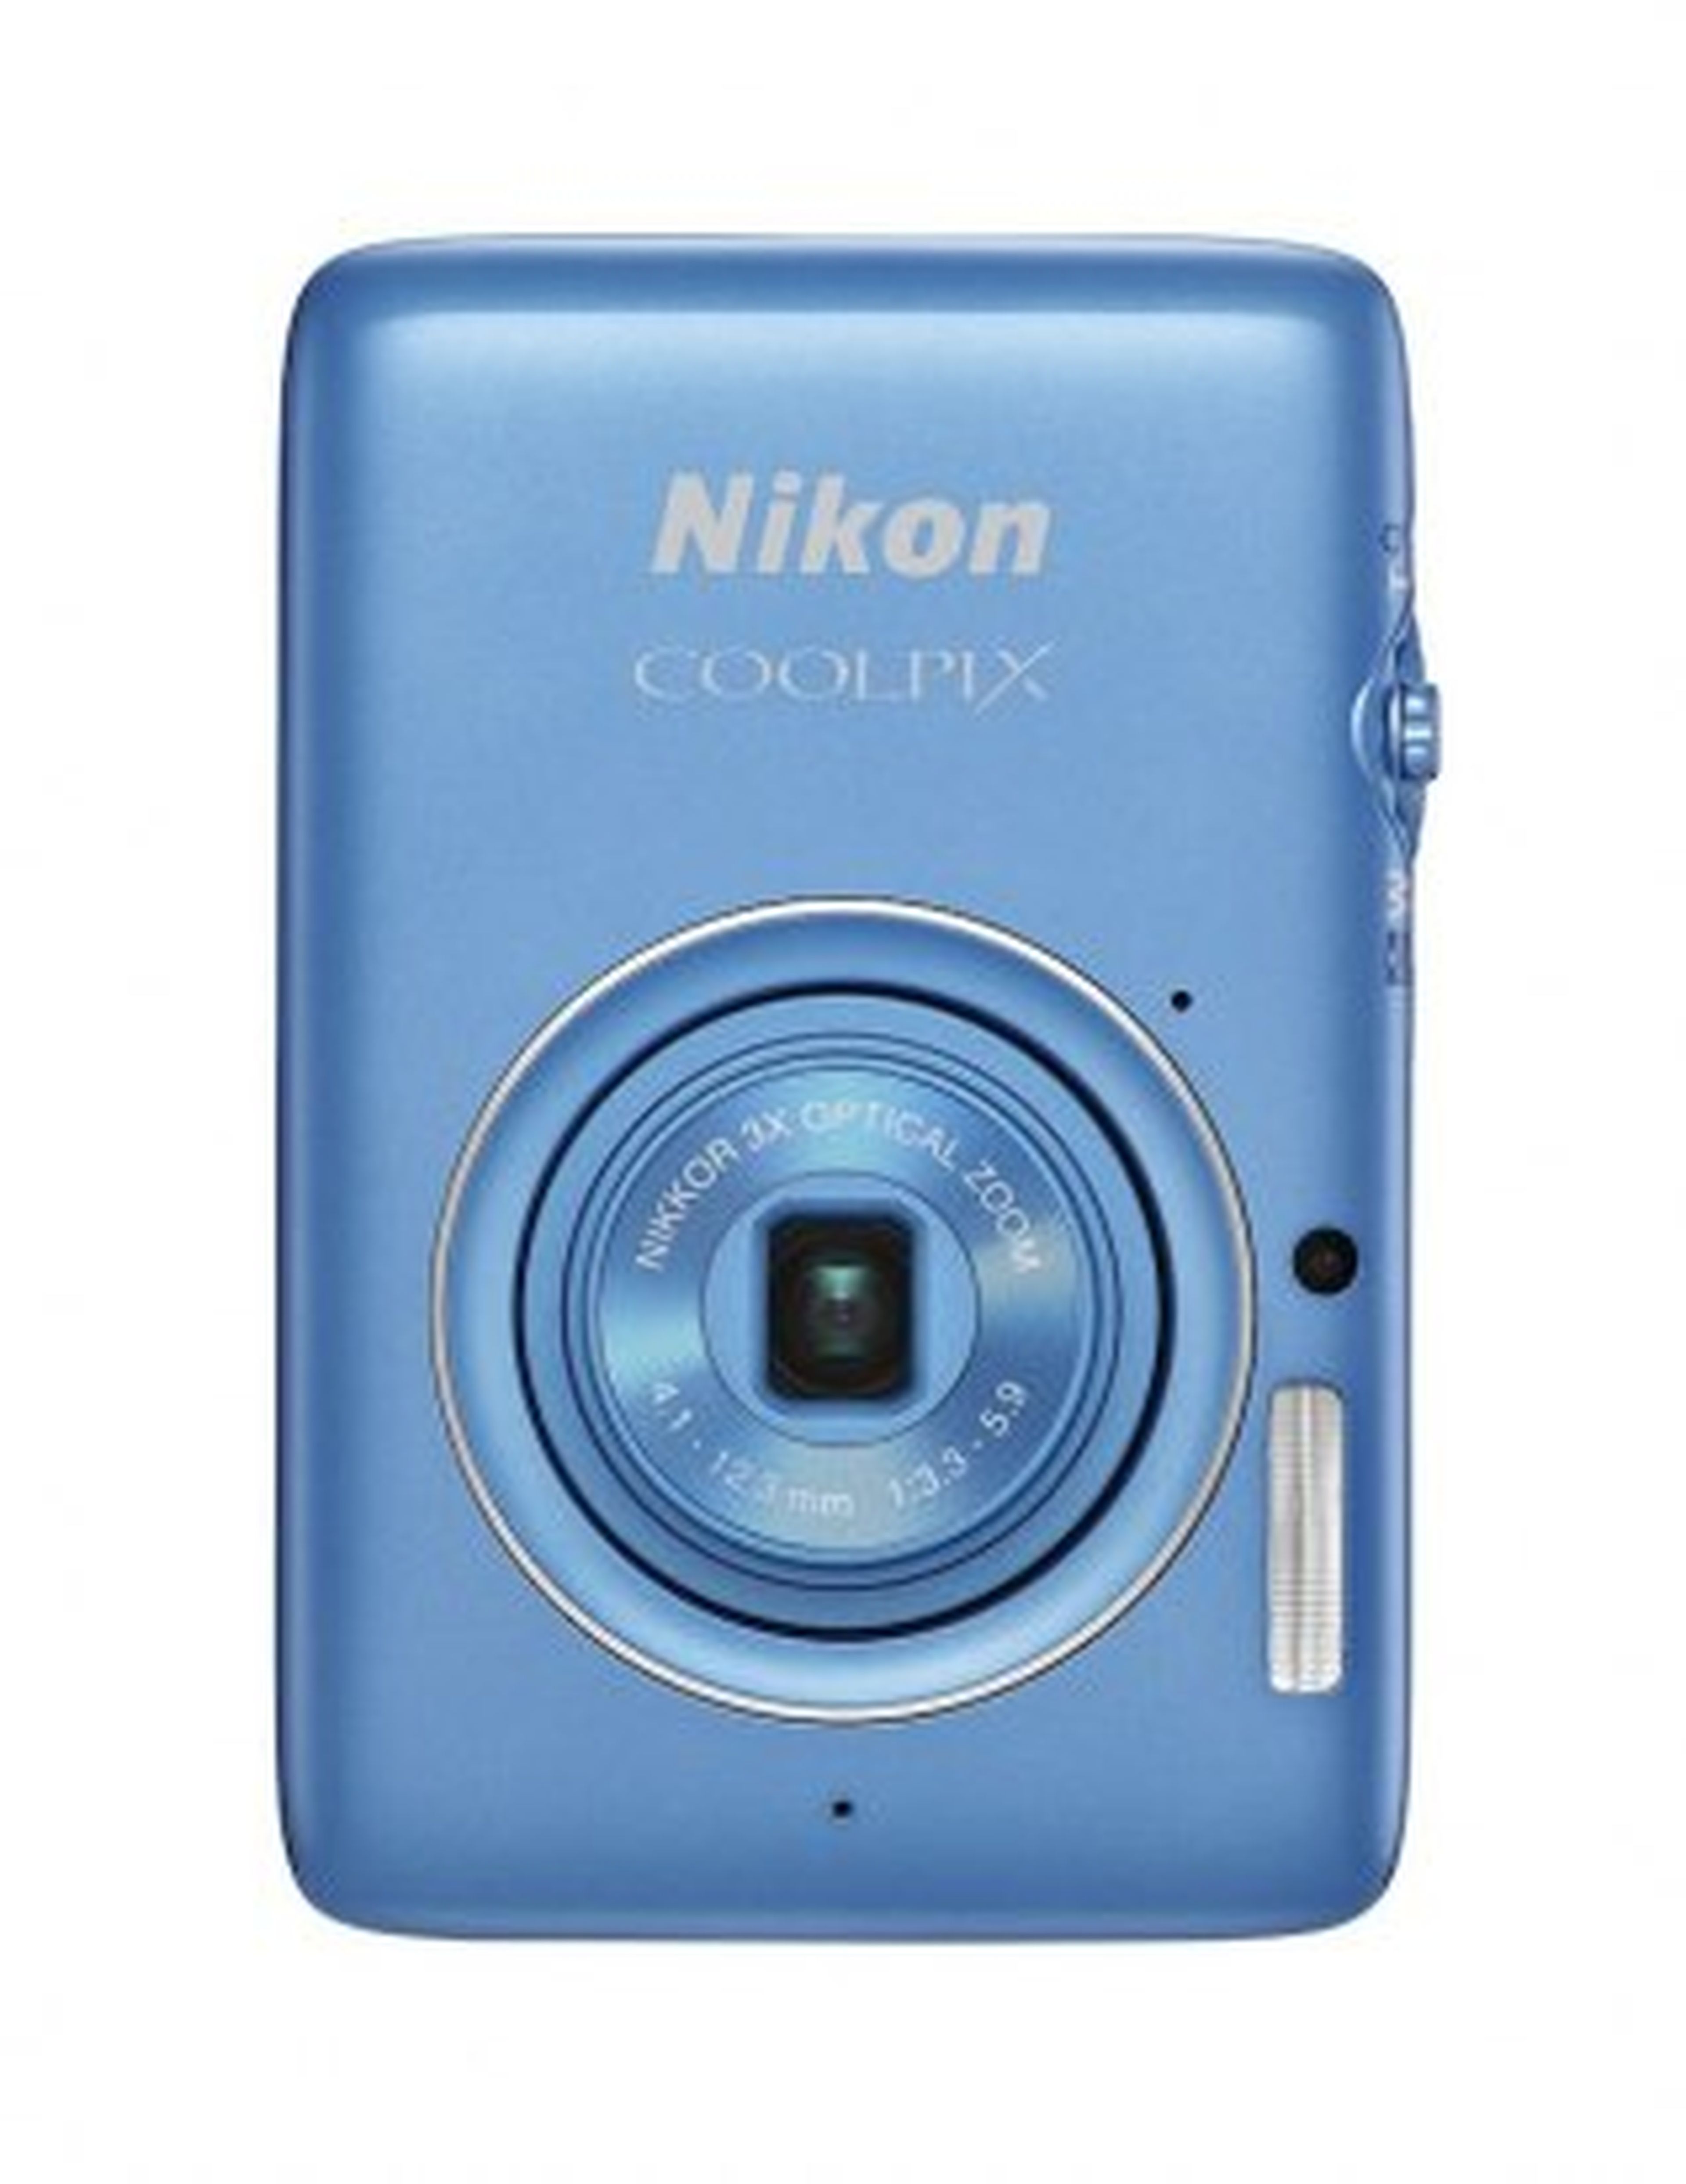 Nikon presenta su nueva cámara Coolpix P7800